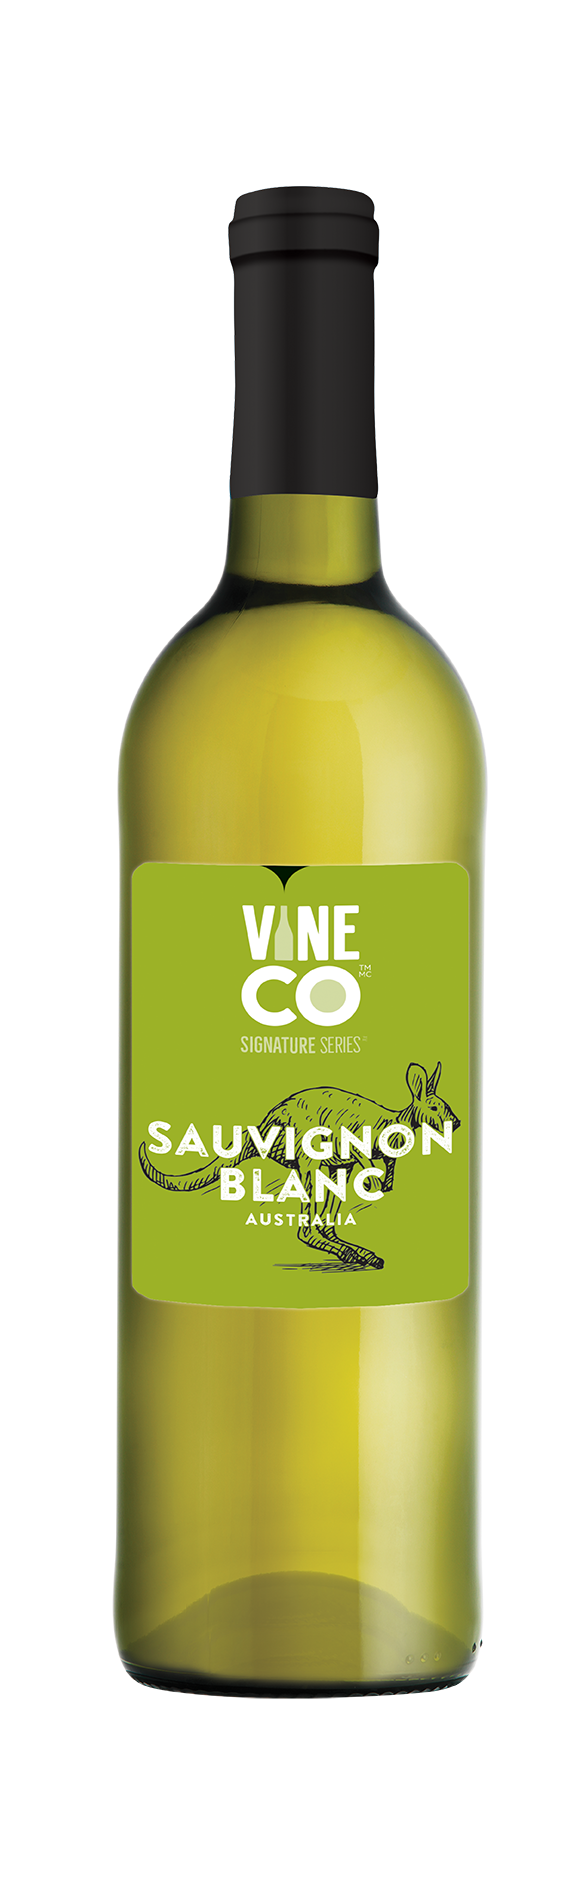 VineCo Signature Series - Sauvignon Blanc, Australia - The Wine Warehouse CA